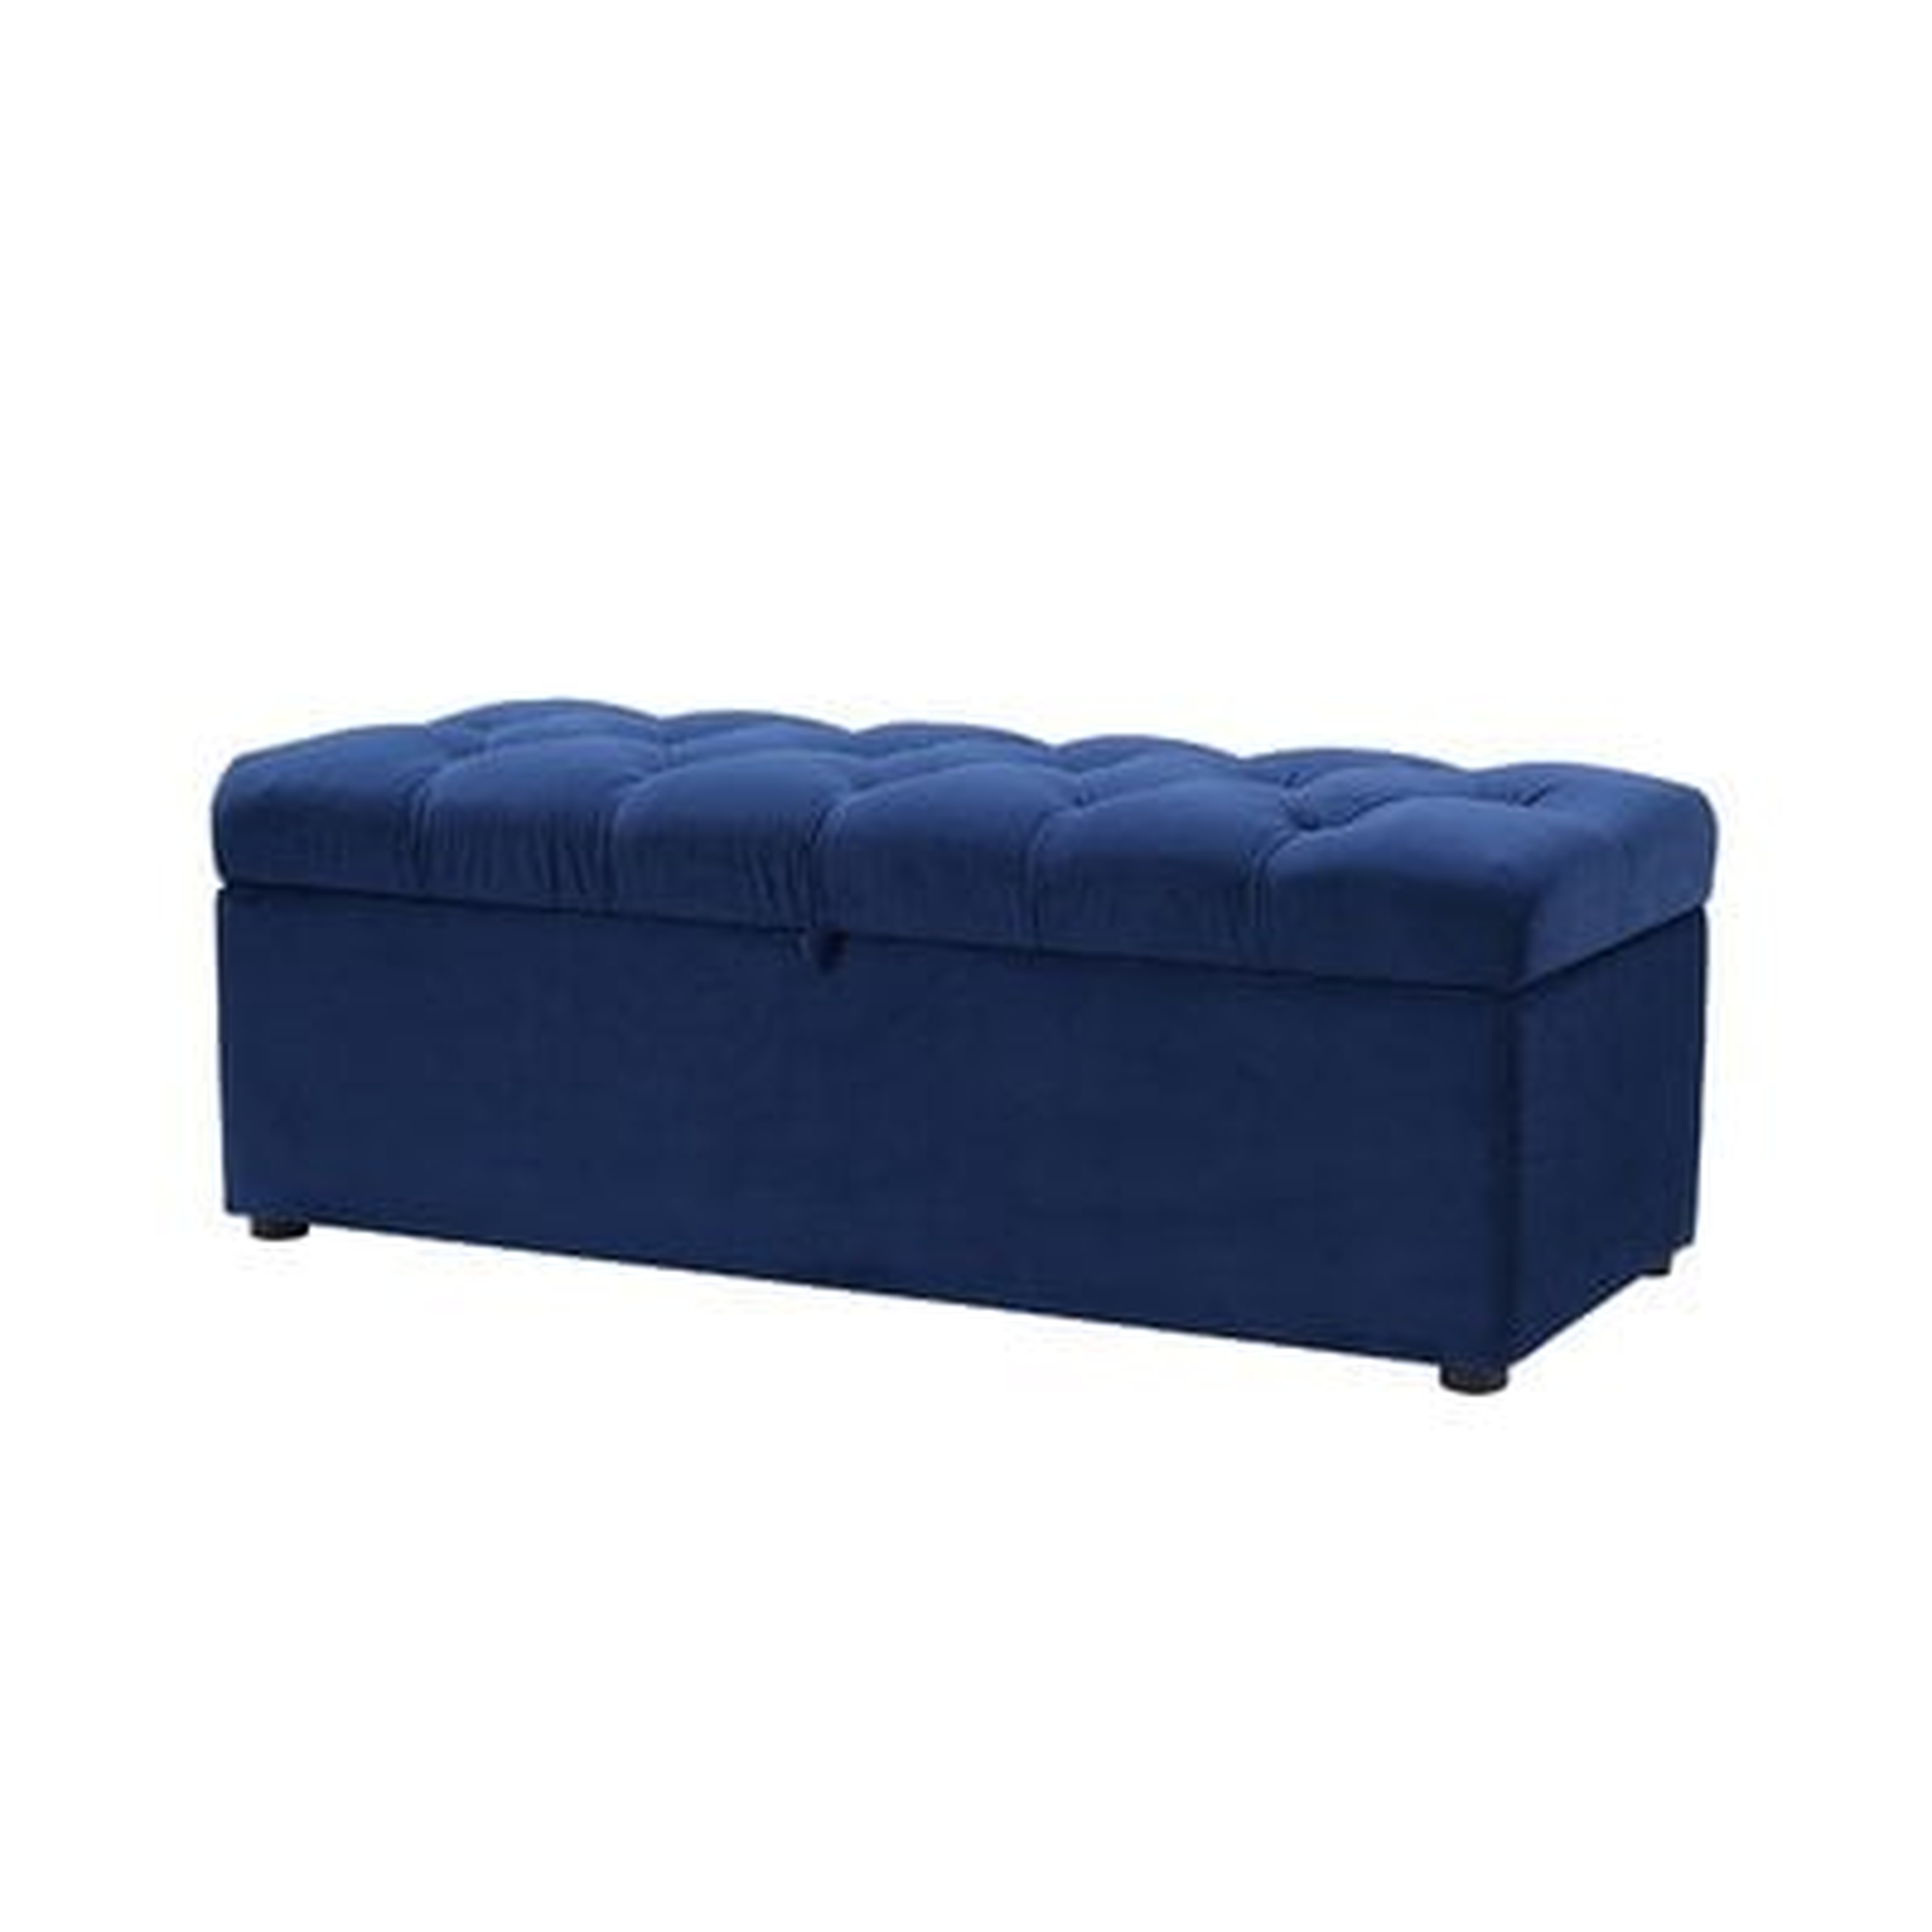 Luyen Tufted Upholstered Storage Bedroom Bench - Wayfair